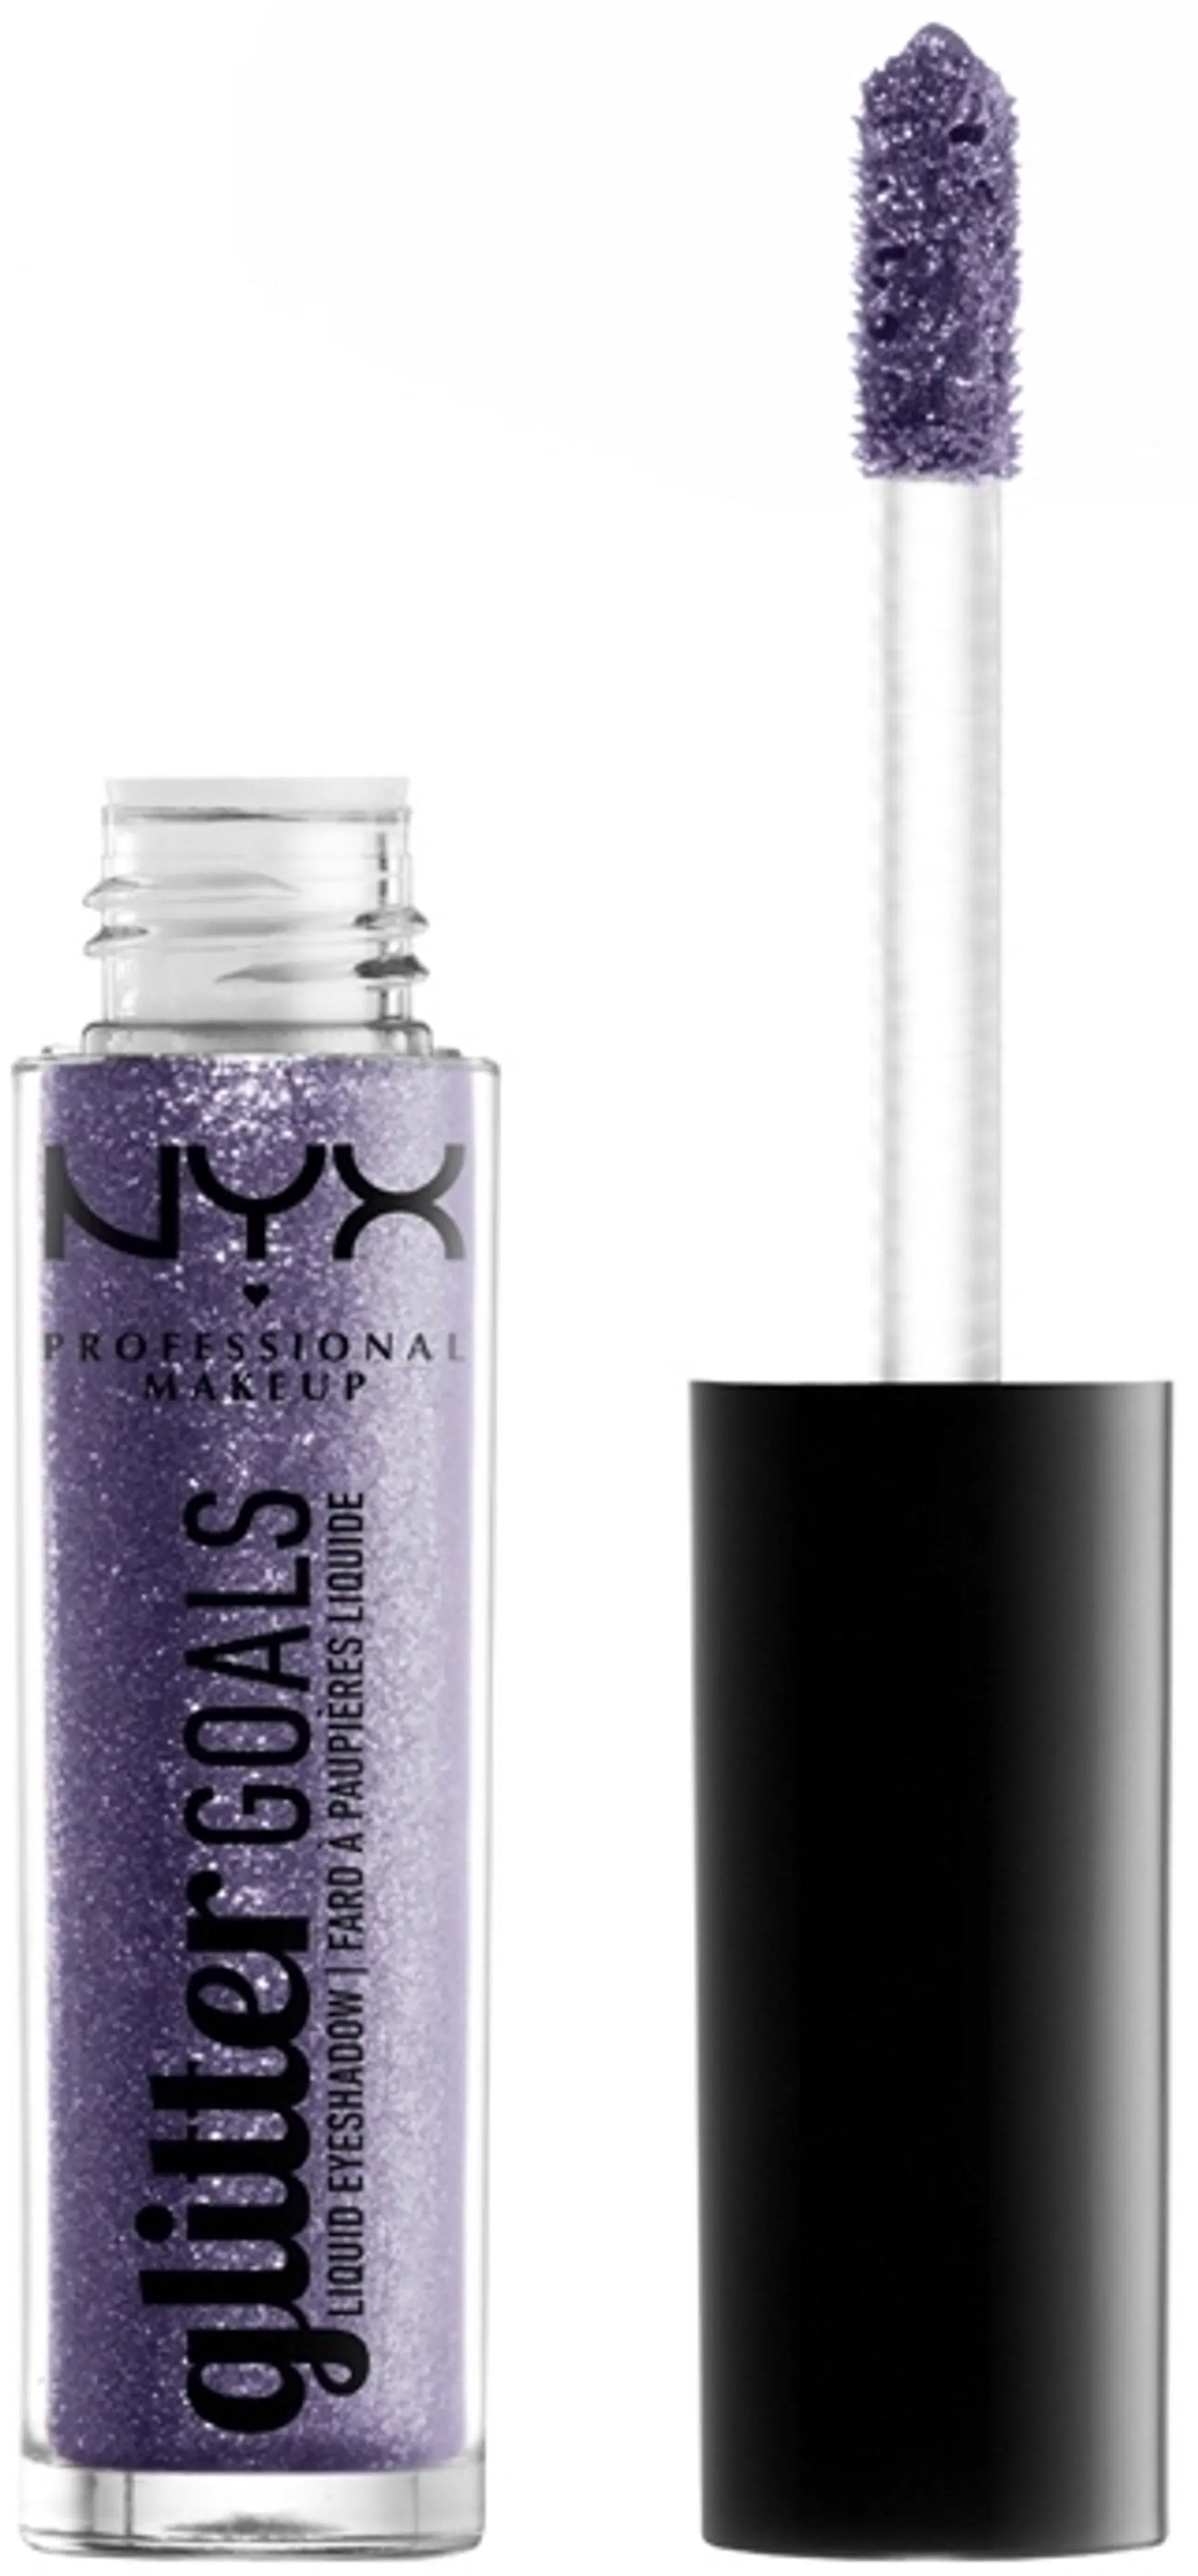 NYX Professional Makeup Glitter Goals Liquid Eyeshadow nestemäinen luomiväri 3,5g